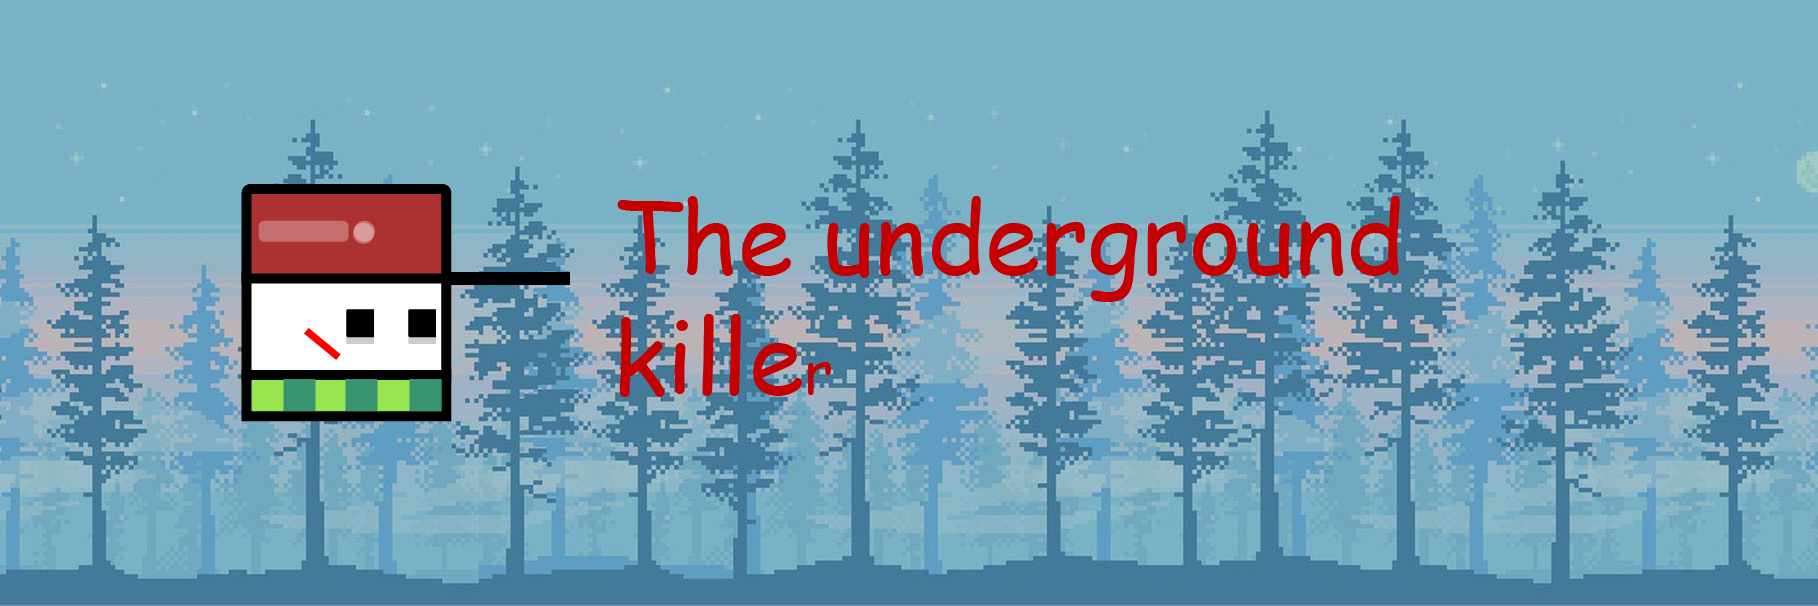 The underground killer